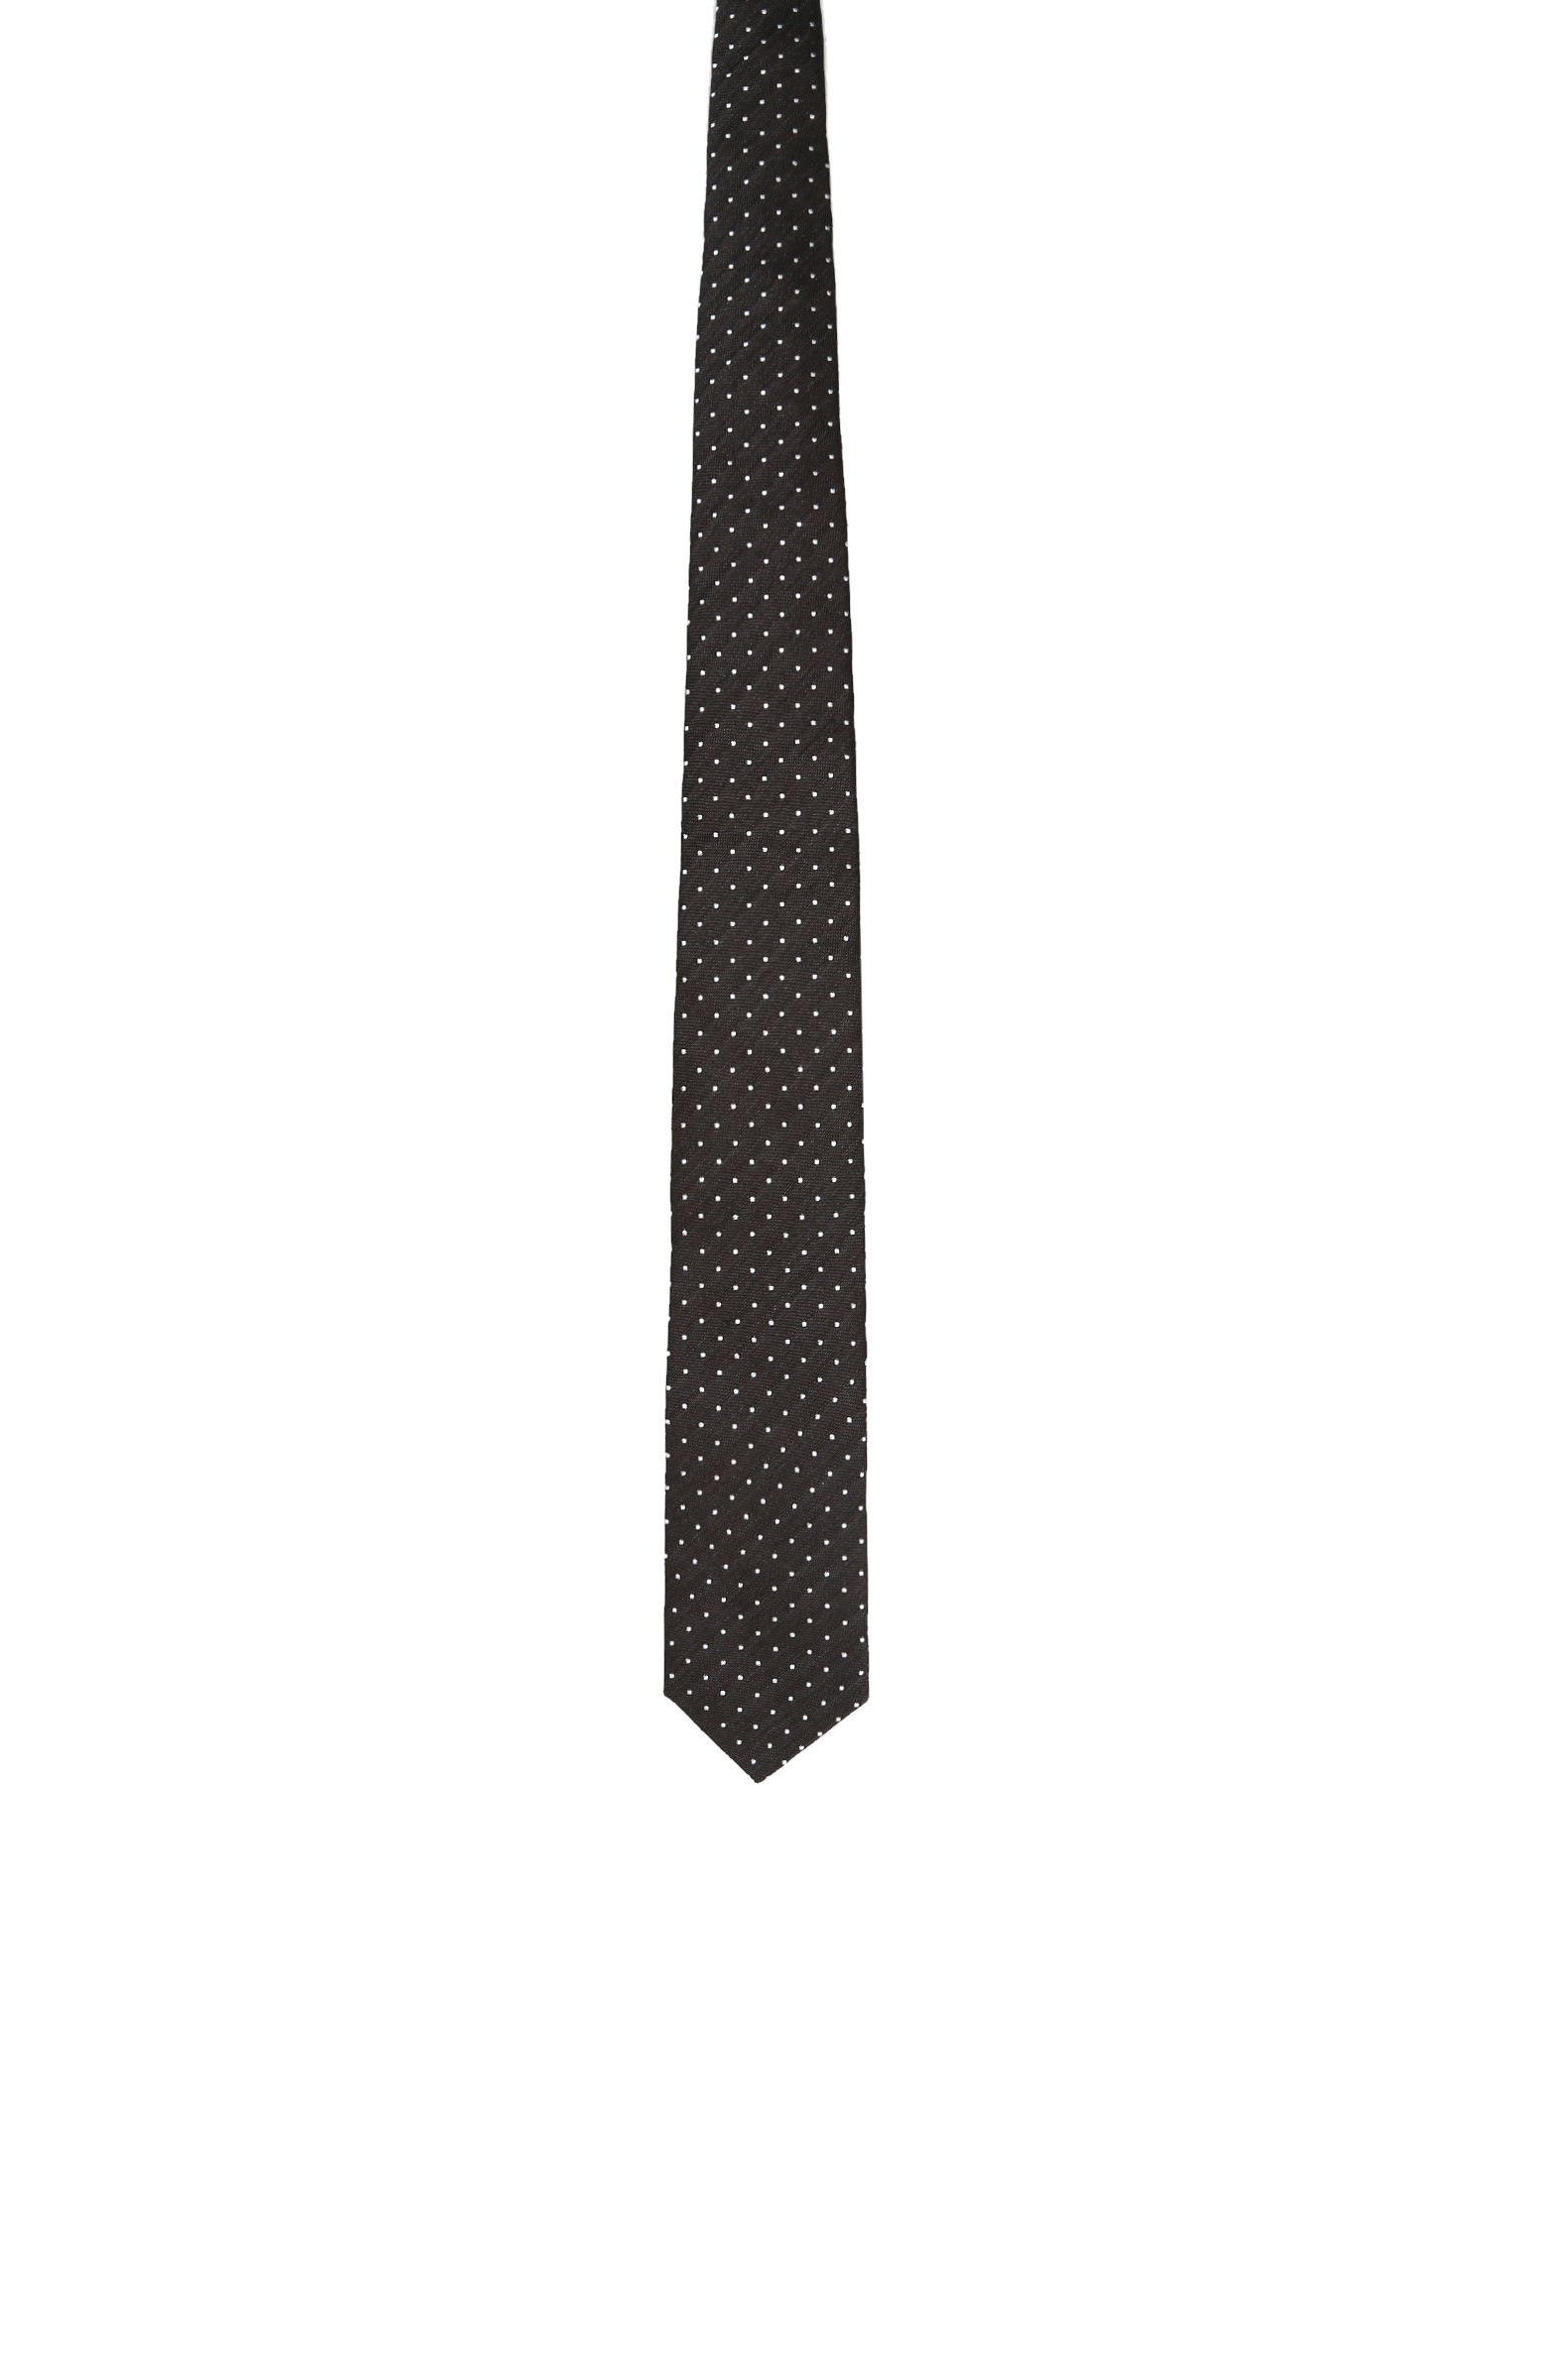 Siyah Beyaz Puantiyeli İpek Erkek Kravat